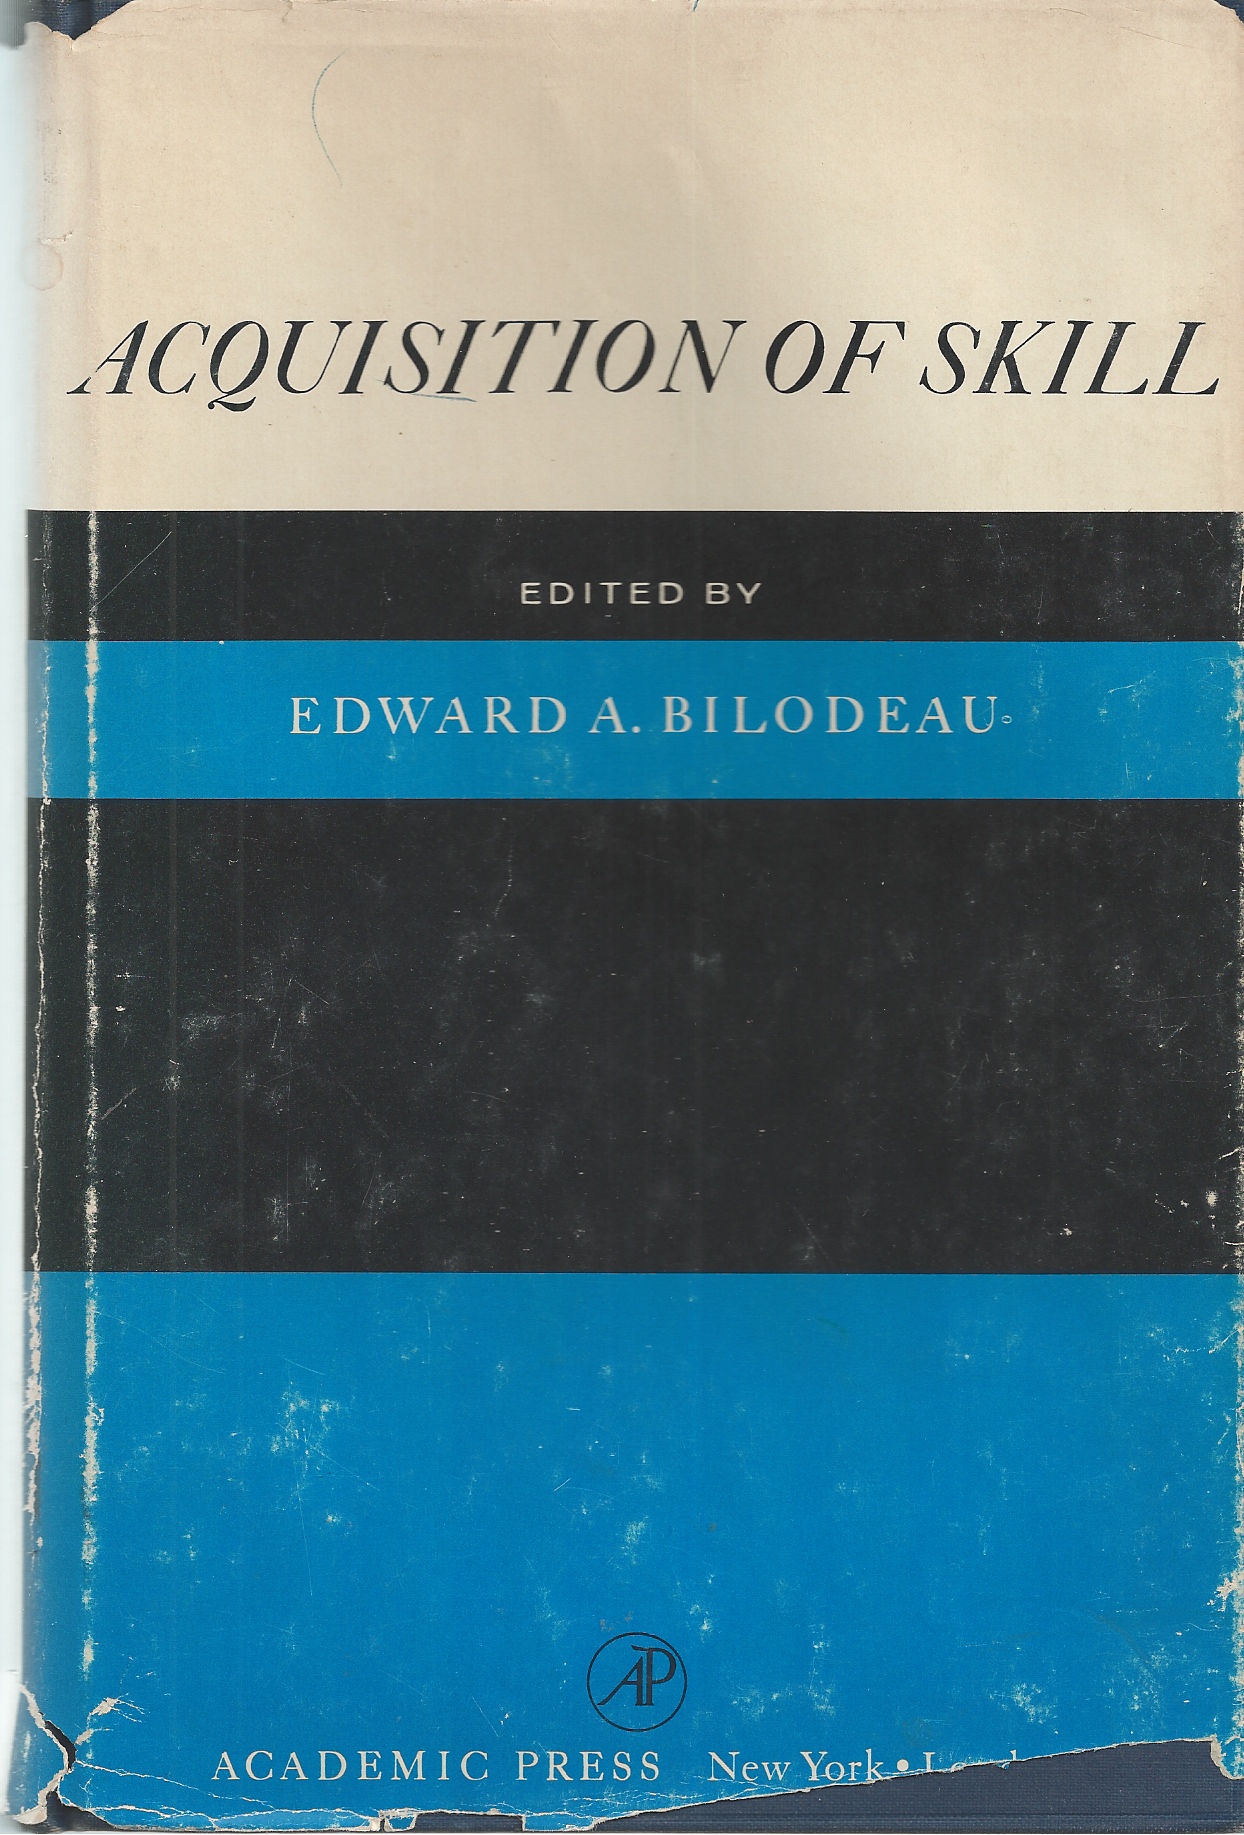 BILODEAU, E. A. , EDITOR - Acquisition of Skill